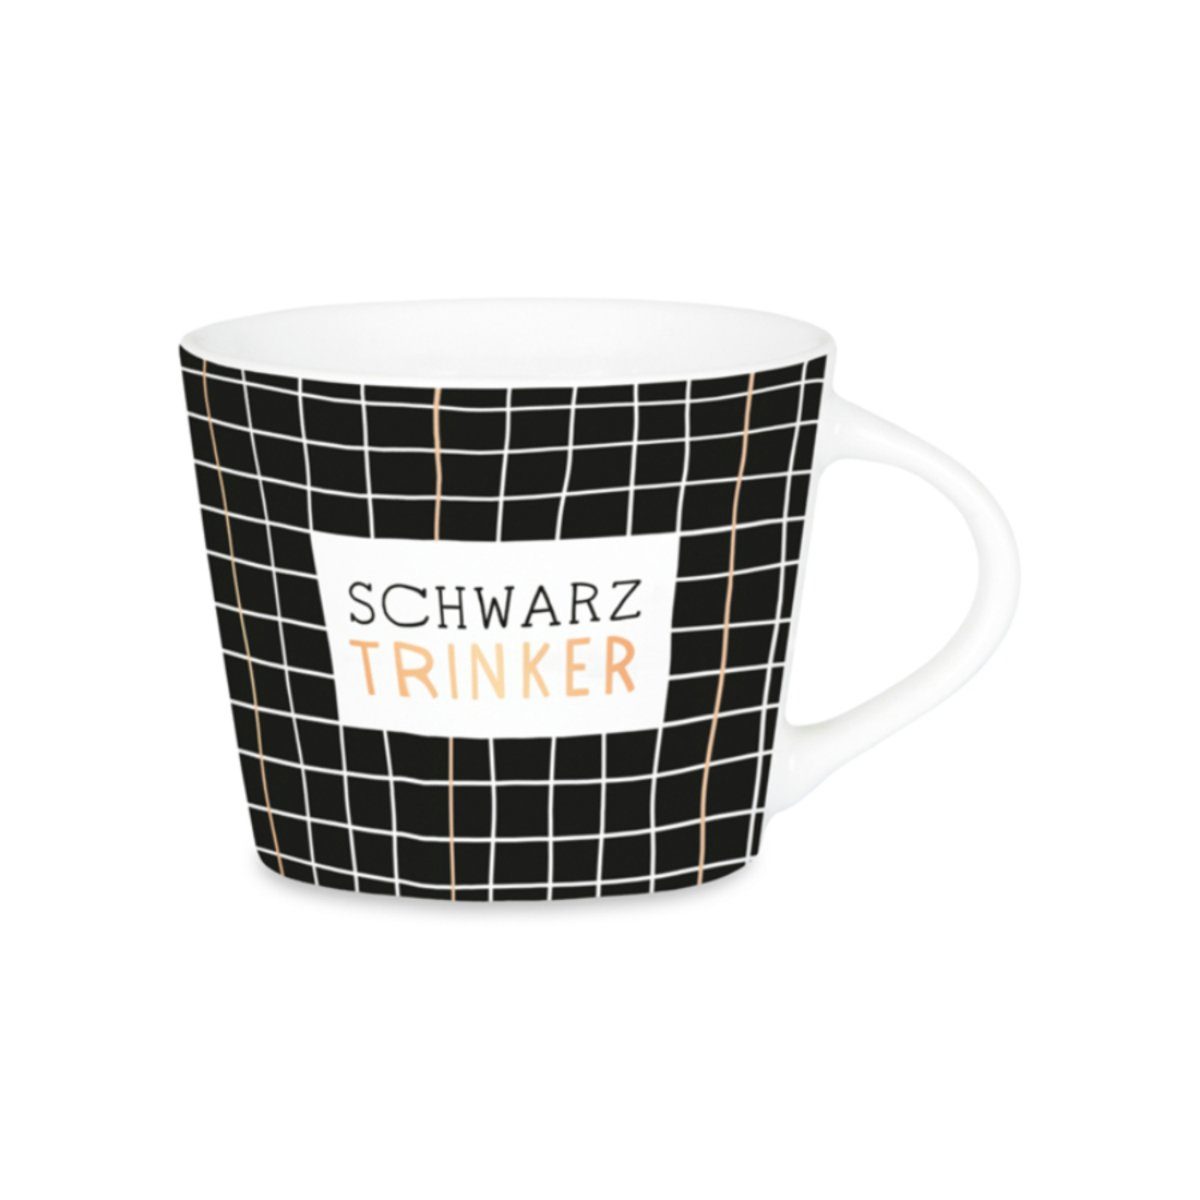 Werkstatt Schreibkram Grafik Manufaktur Espresso-Tasse Schwarz Trinker Tasse